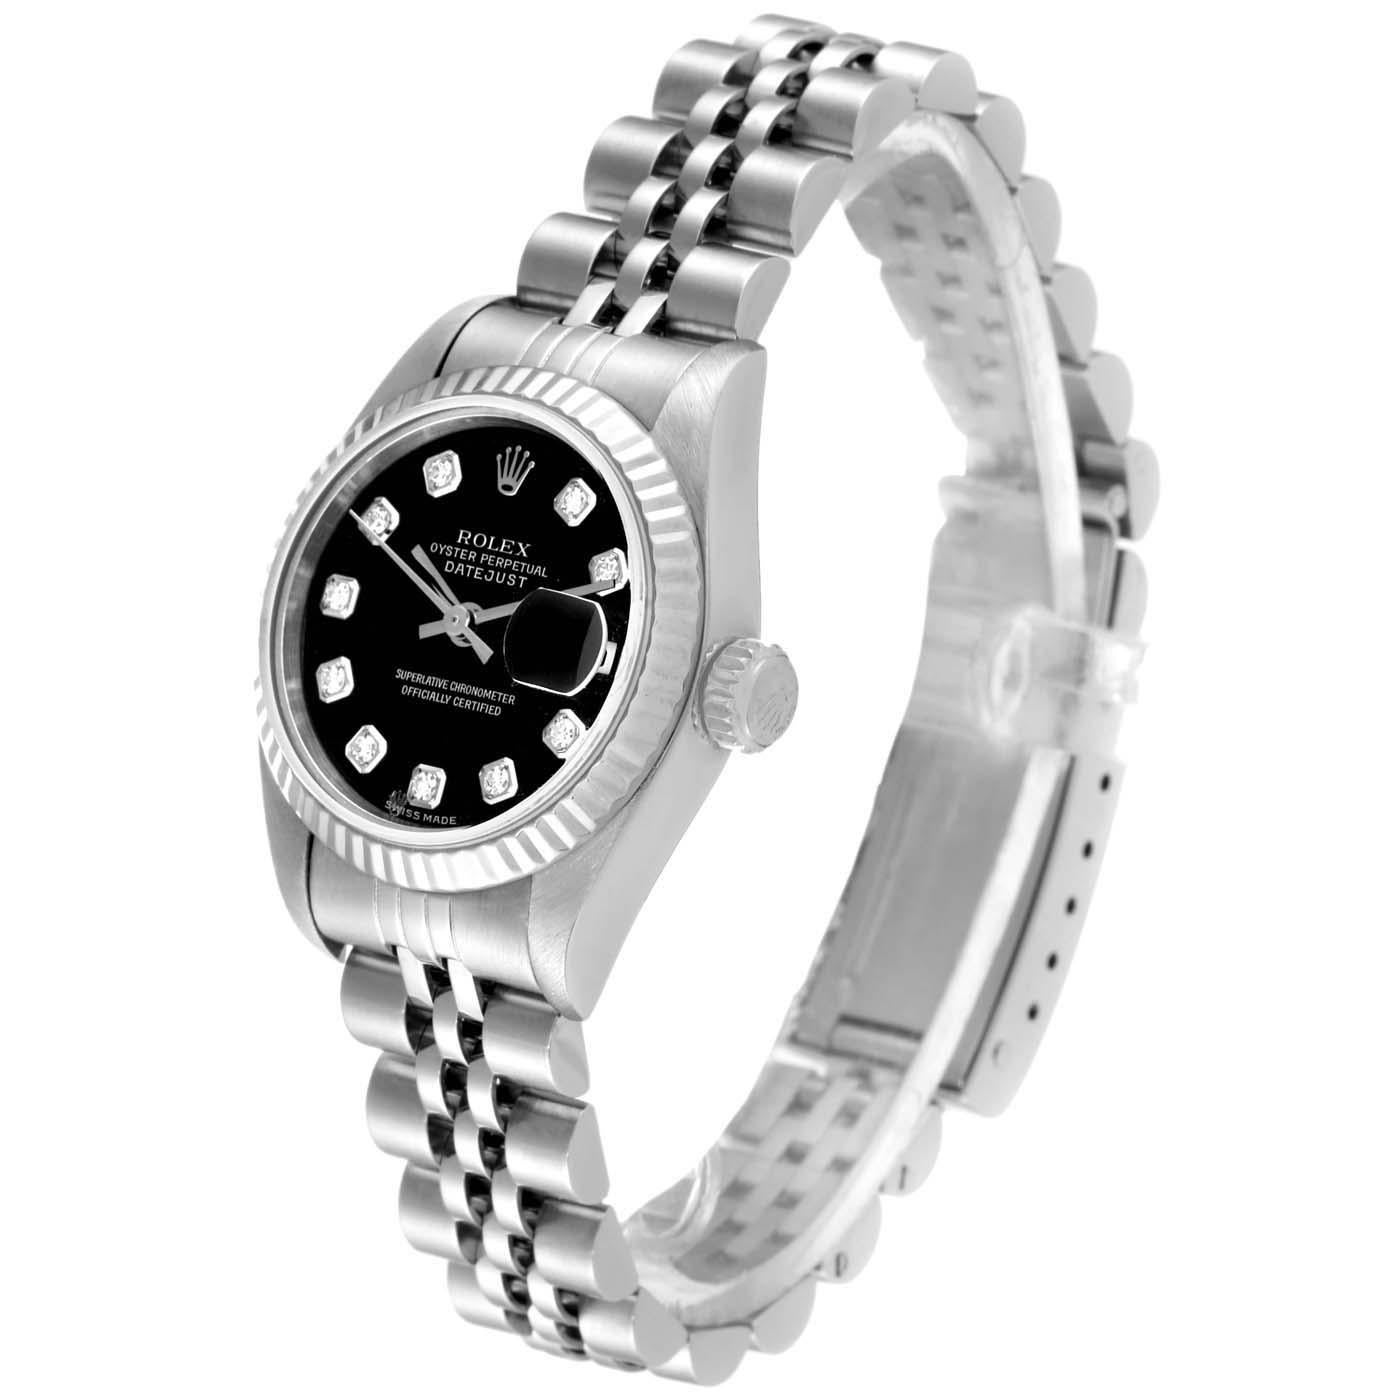 Rolex Datejust 26mm Steel White Gold Black Diamond Dial Ladies Watch 79174. Mouvement chronométrique à remontage automatique. Boîtier oyster en acier inoxydable de 26.0 mm de diamètre. Logo Rolex sur une couronne. Lunette cannelée en or blanc 18K.